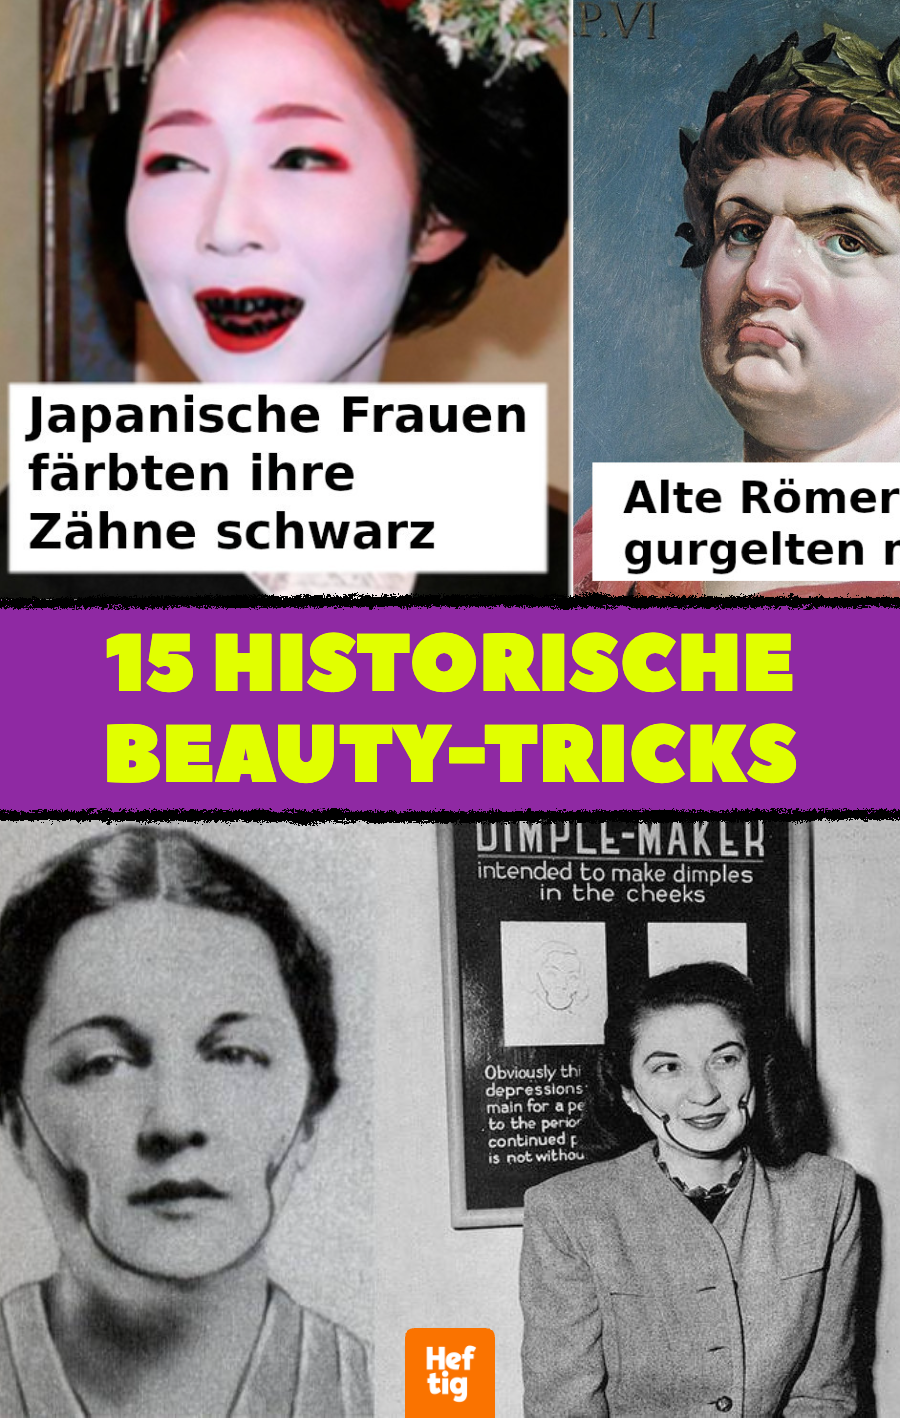 Schräge Beauty-Trends und Schönheitsideale der Geschichte